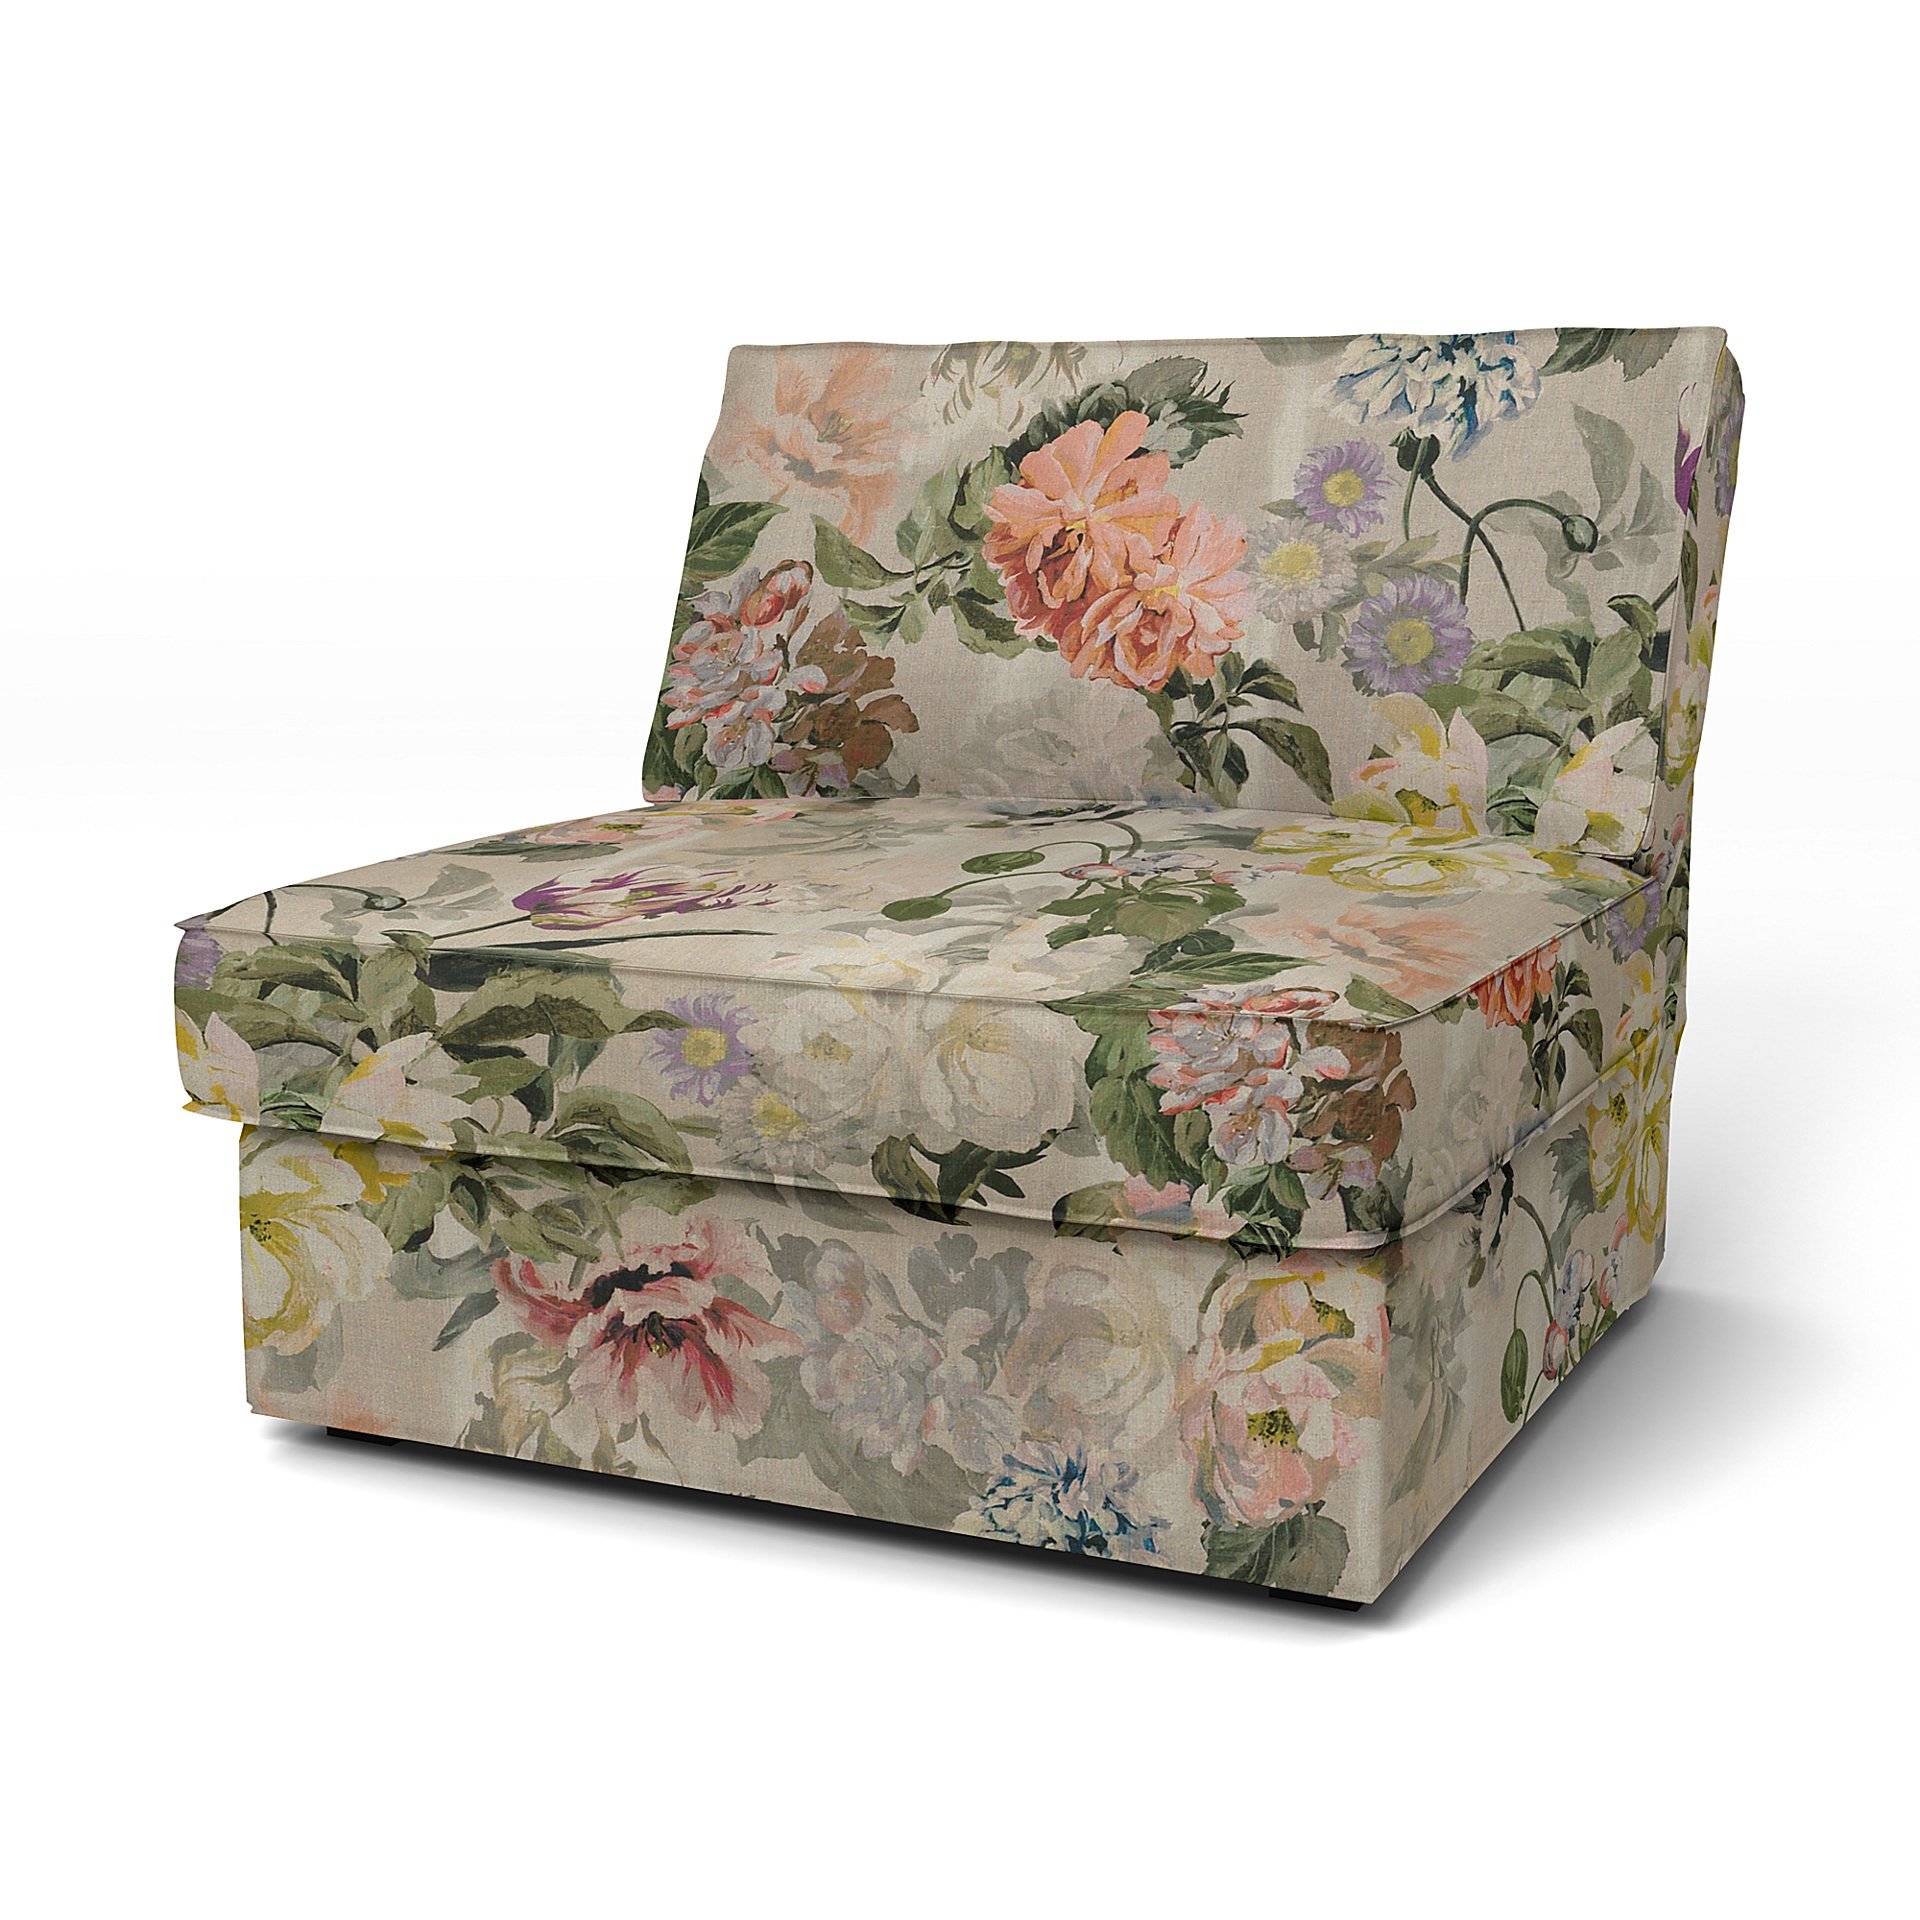 IKEA - Kivik 1 Seater Chair Cover, Delft Flower - Tuberose, Linen - Bemz